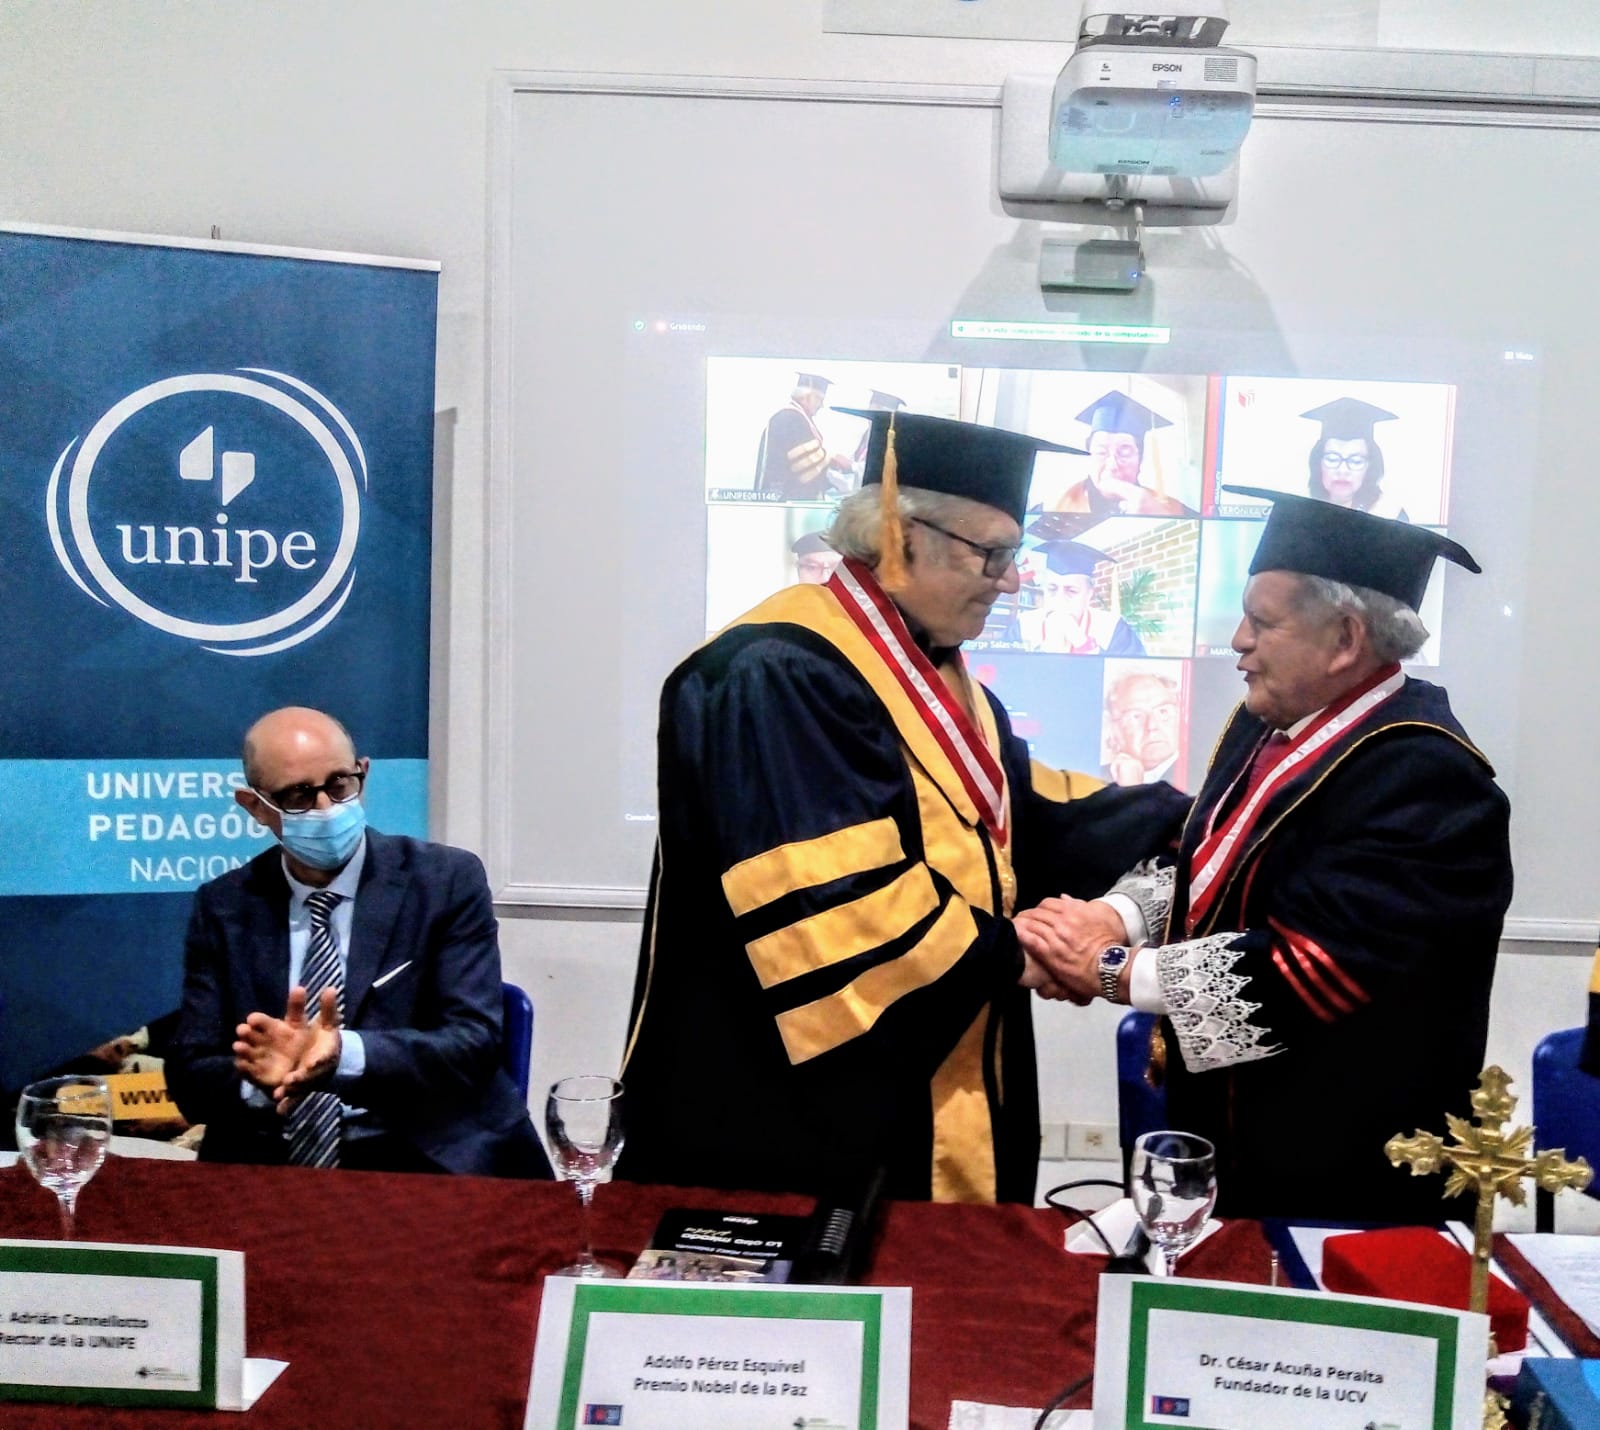 Universidad Peruana premia a Adolfo Pérez Esquivel